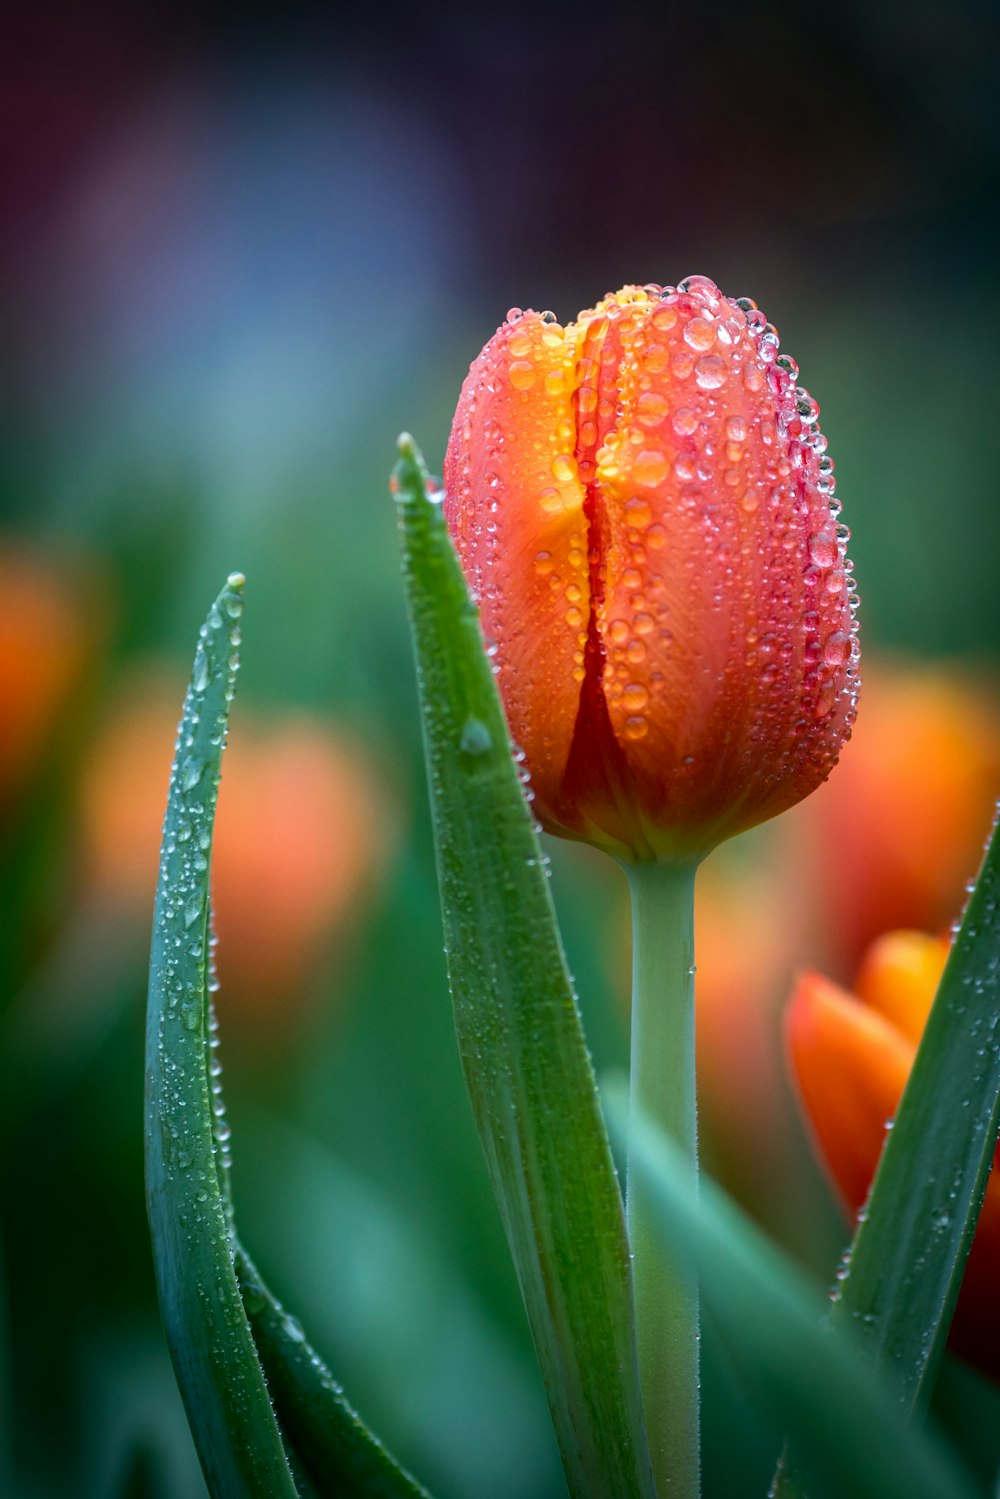 Photographie sélective de la tulipe rouge